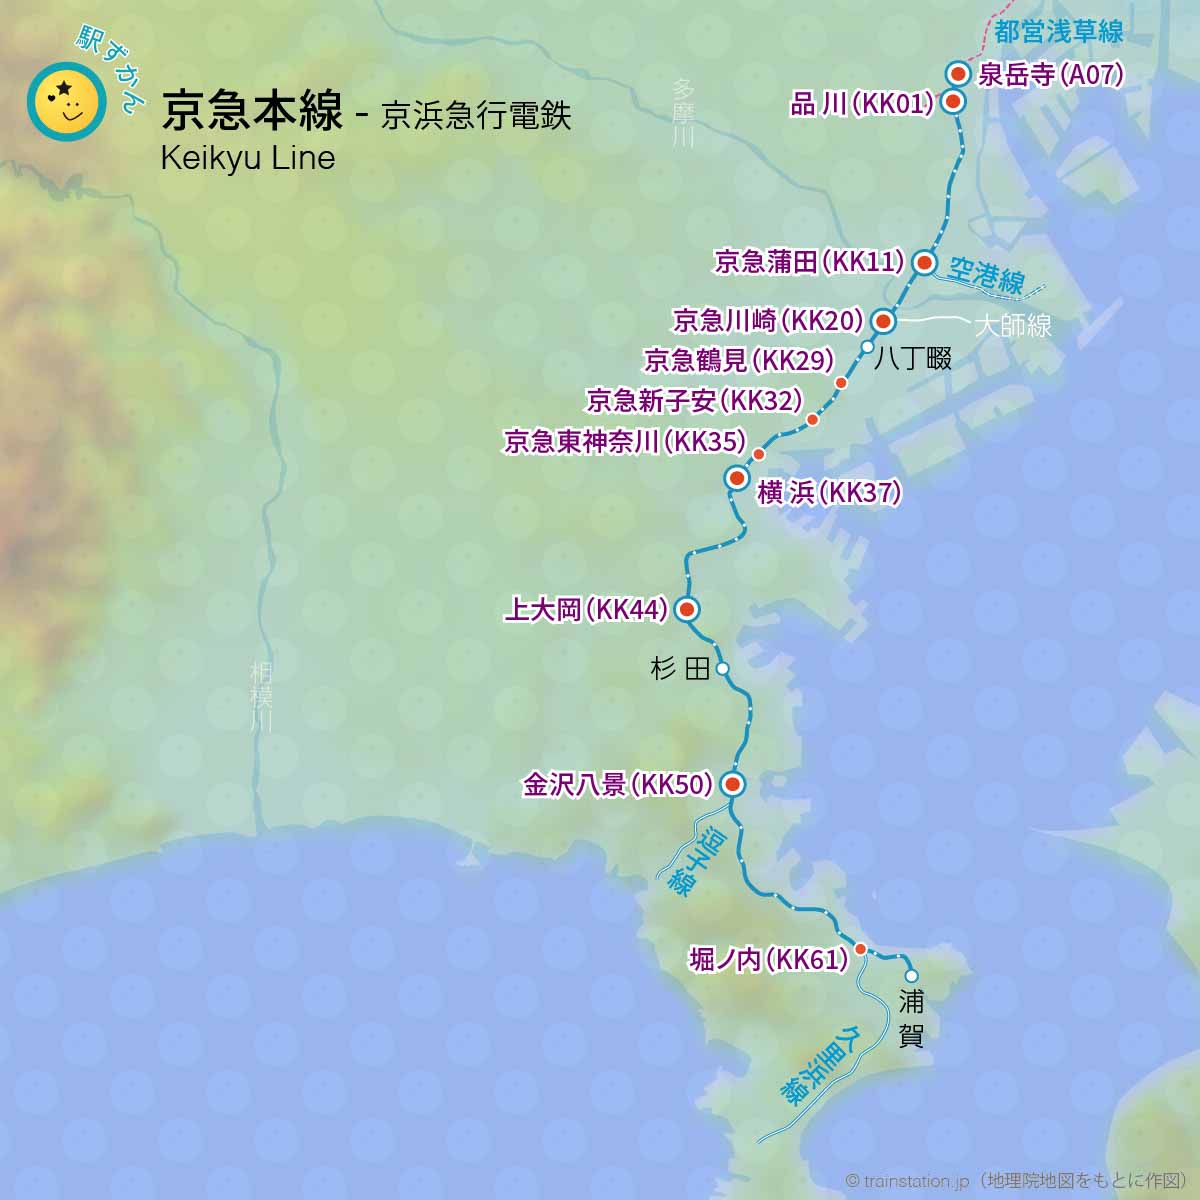 京急本線路線図と地形マップ